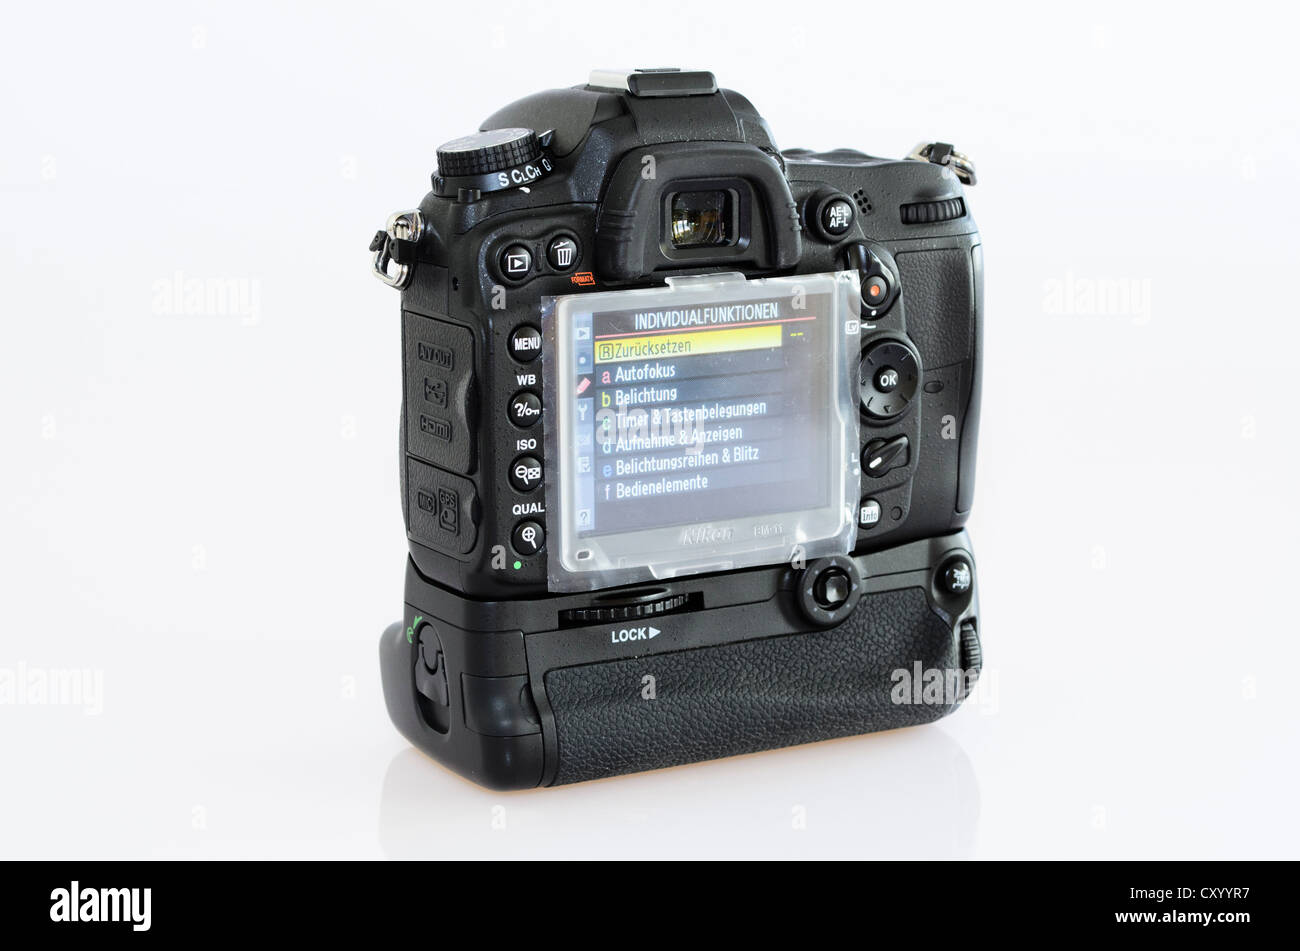 Nikon D7000 appareil photo reflex numérique avec batterie grip Photo Stock  - Alamy